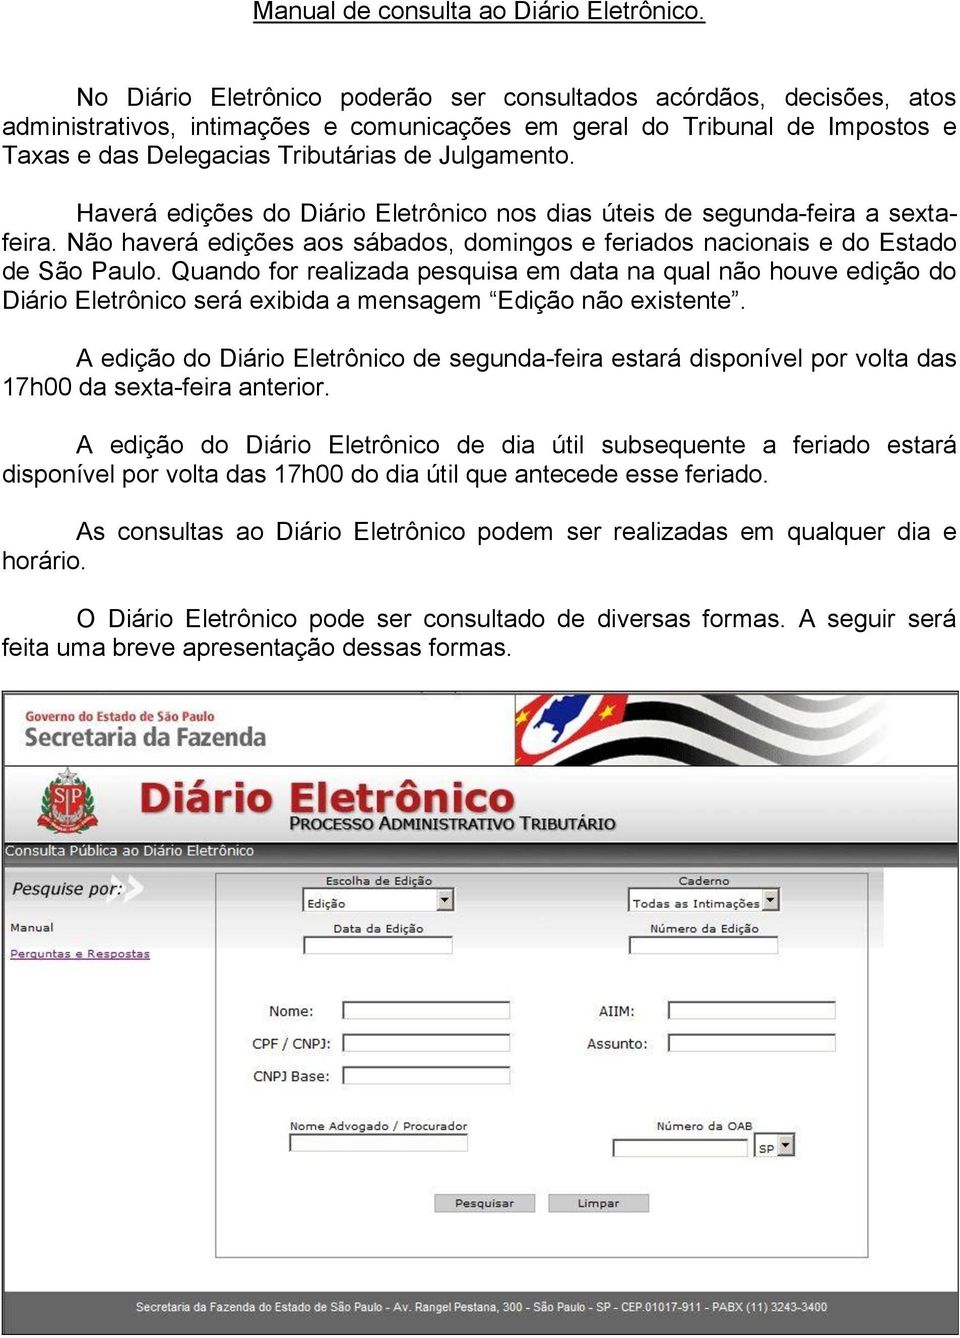 Haverá edições do Diário Eletrônico nos dias úteis de segunda-feira a sextafeira. Não haverá edições aos sábados, domingos e feriados nacionais e do Estado de São Paulo.